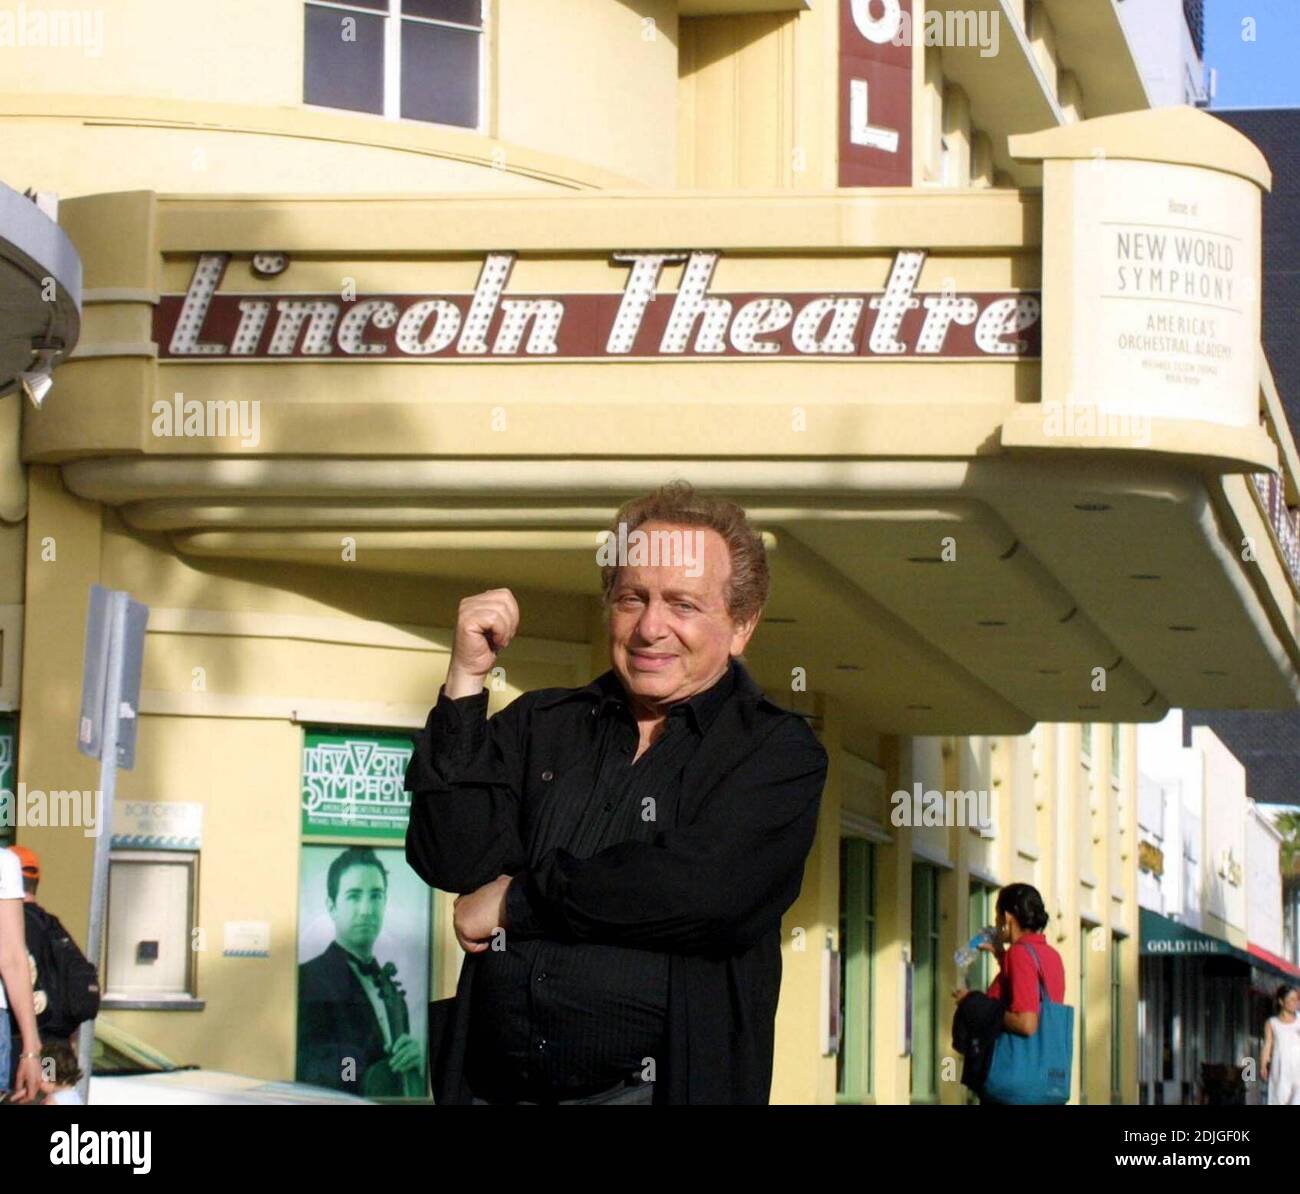 Exclusif !! Le comédien Jackie Mason pose à l'extérieur des plages de Miami, célèbre Lincoln Theatre, 1/24/06 Banque D'Images